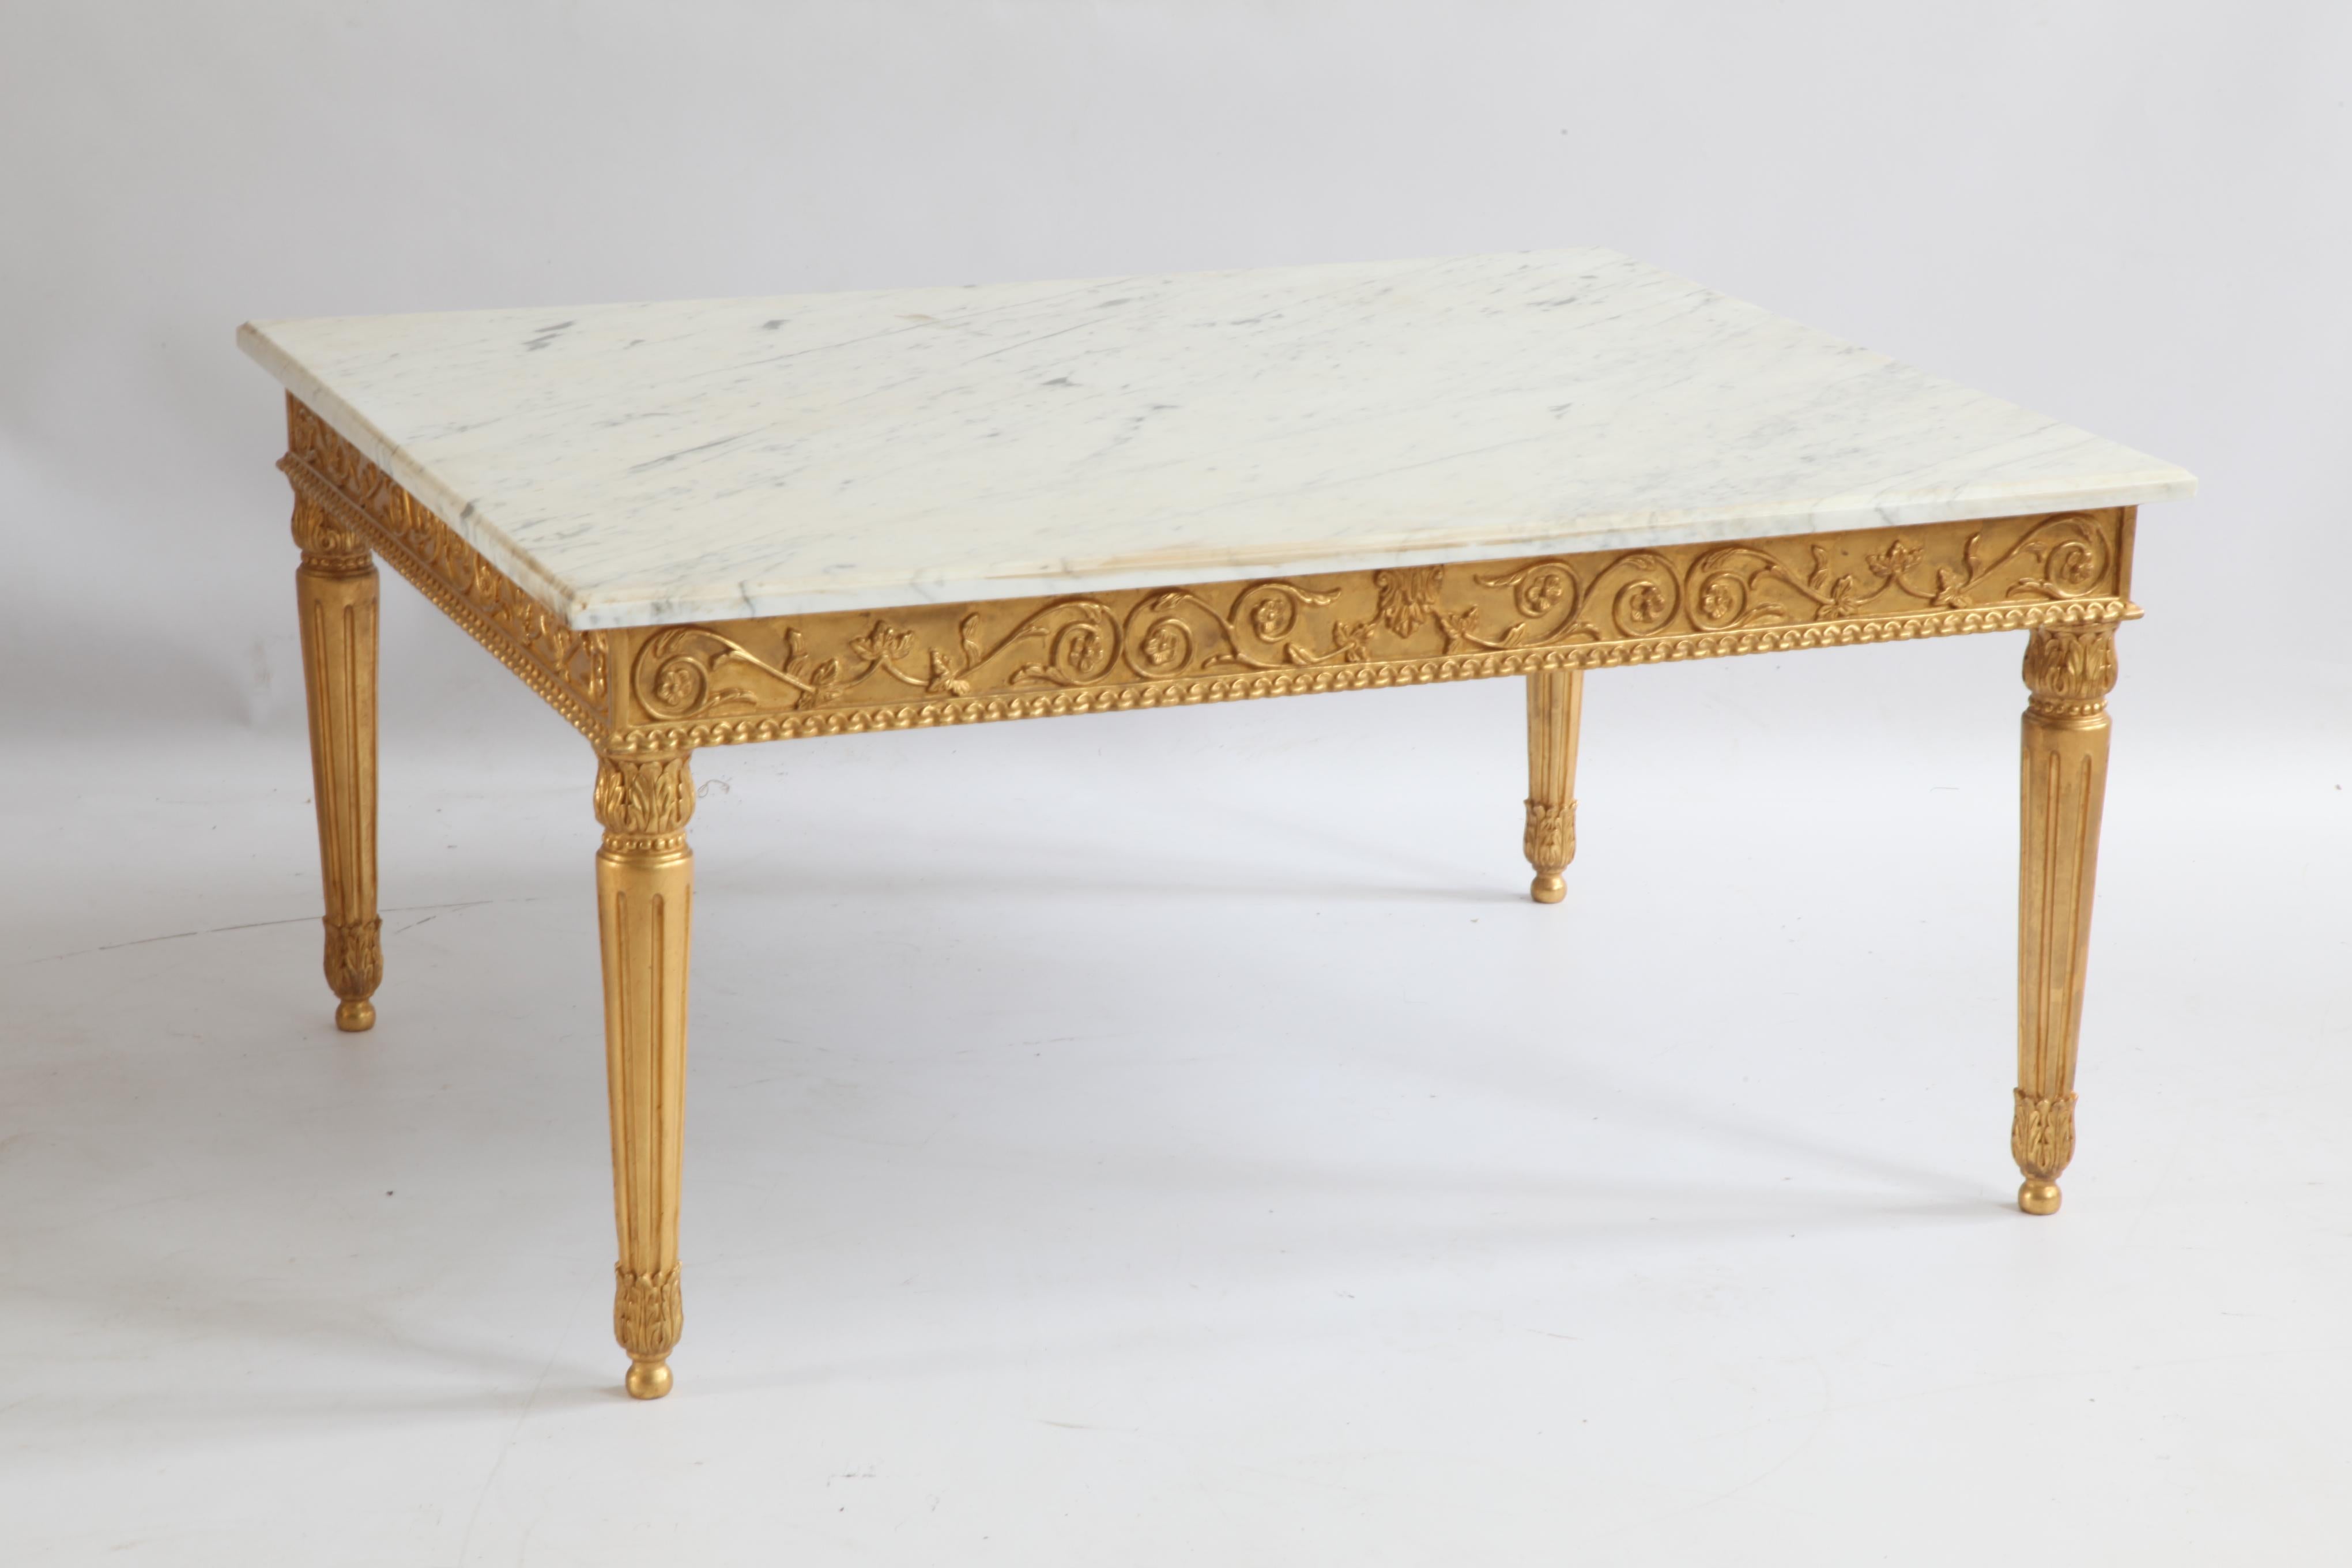 Handgeschnitzter Couchtisch im Louis XVI-Stil, hergestellt von La Maison, London. 
Die Platte aus Carrara-Marmor wurde von La Maison London hergestellt und hat an allen Seiten abgeschrägte Kanten.
Vergoldete Oberfläche.